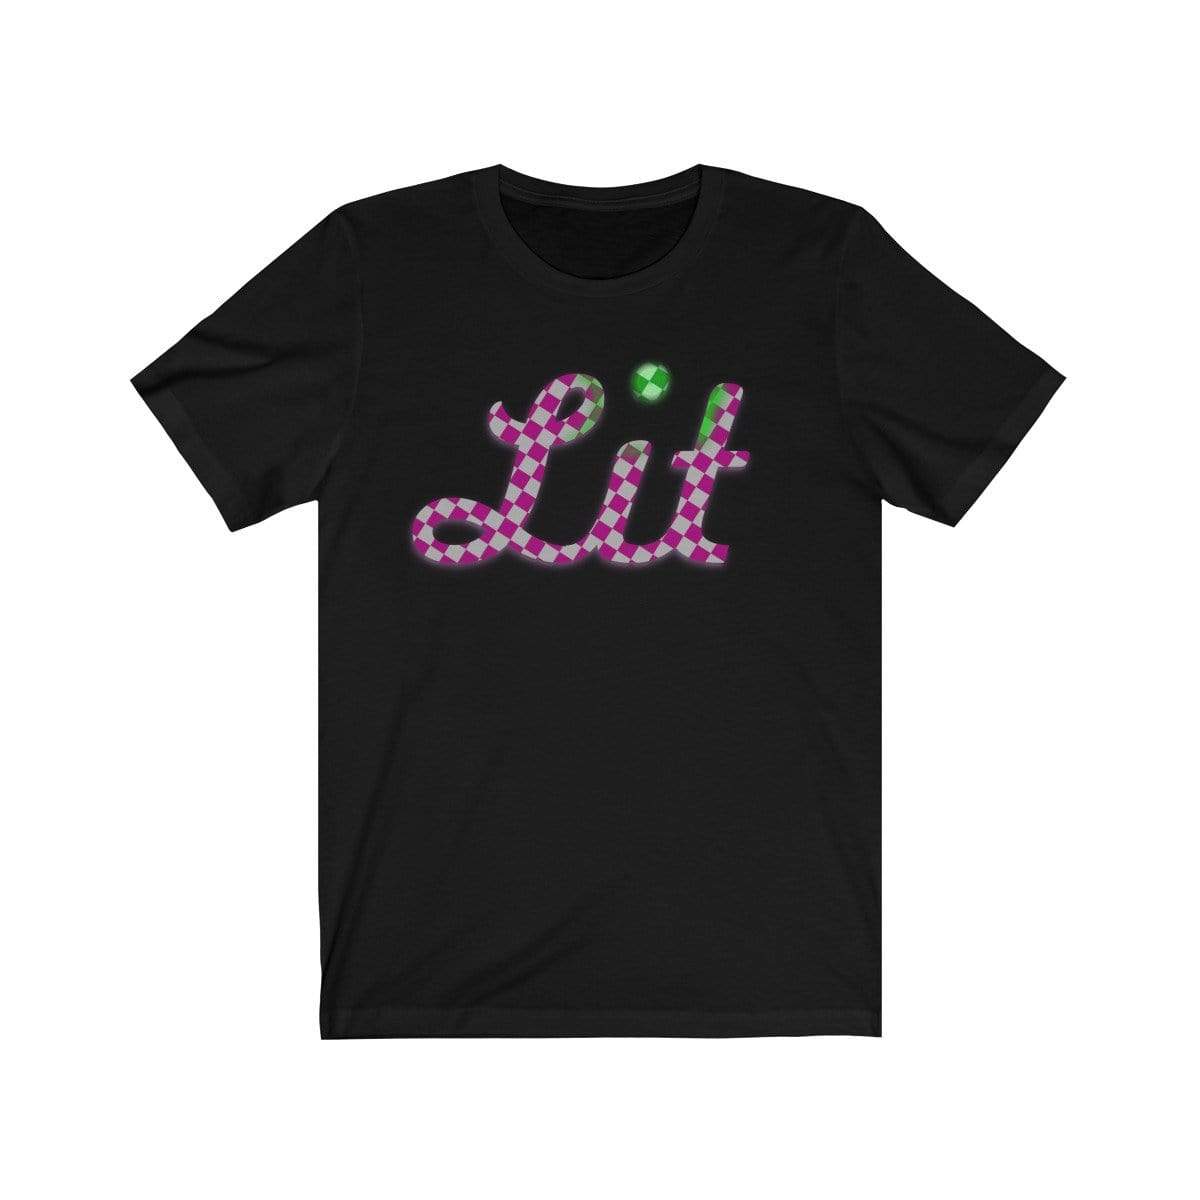 Plumskum T-Shirt Black / S Pink Checkered Lit T-shirt